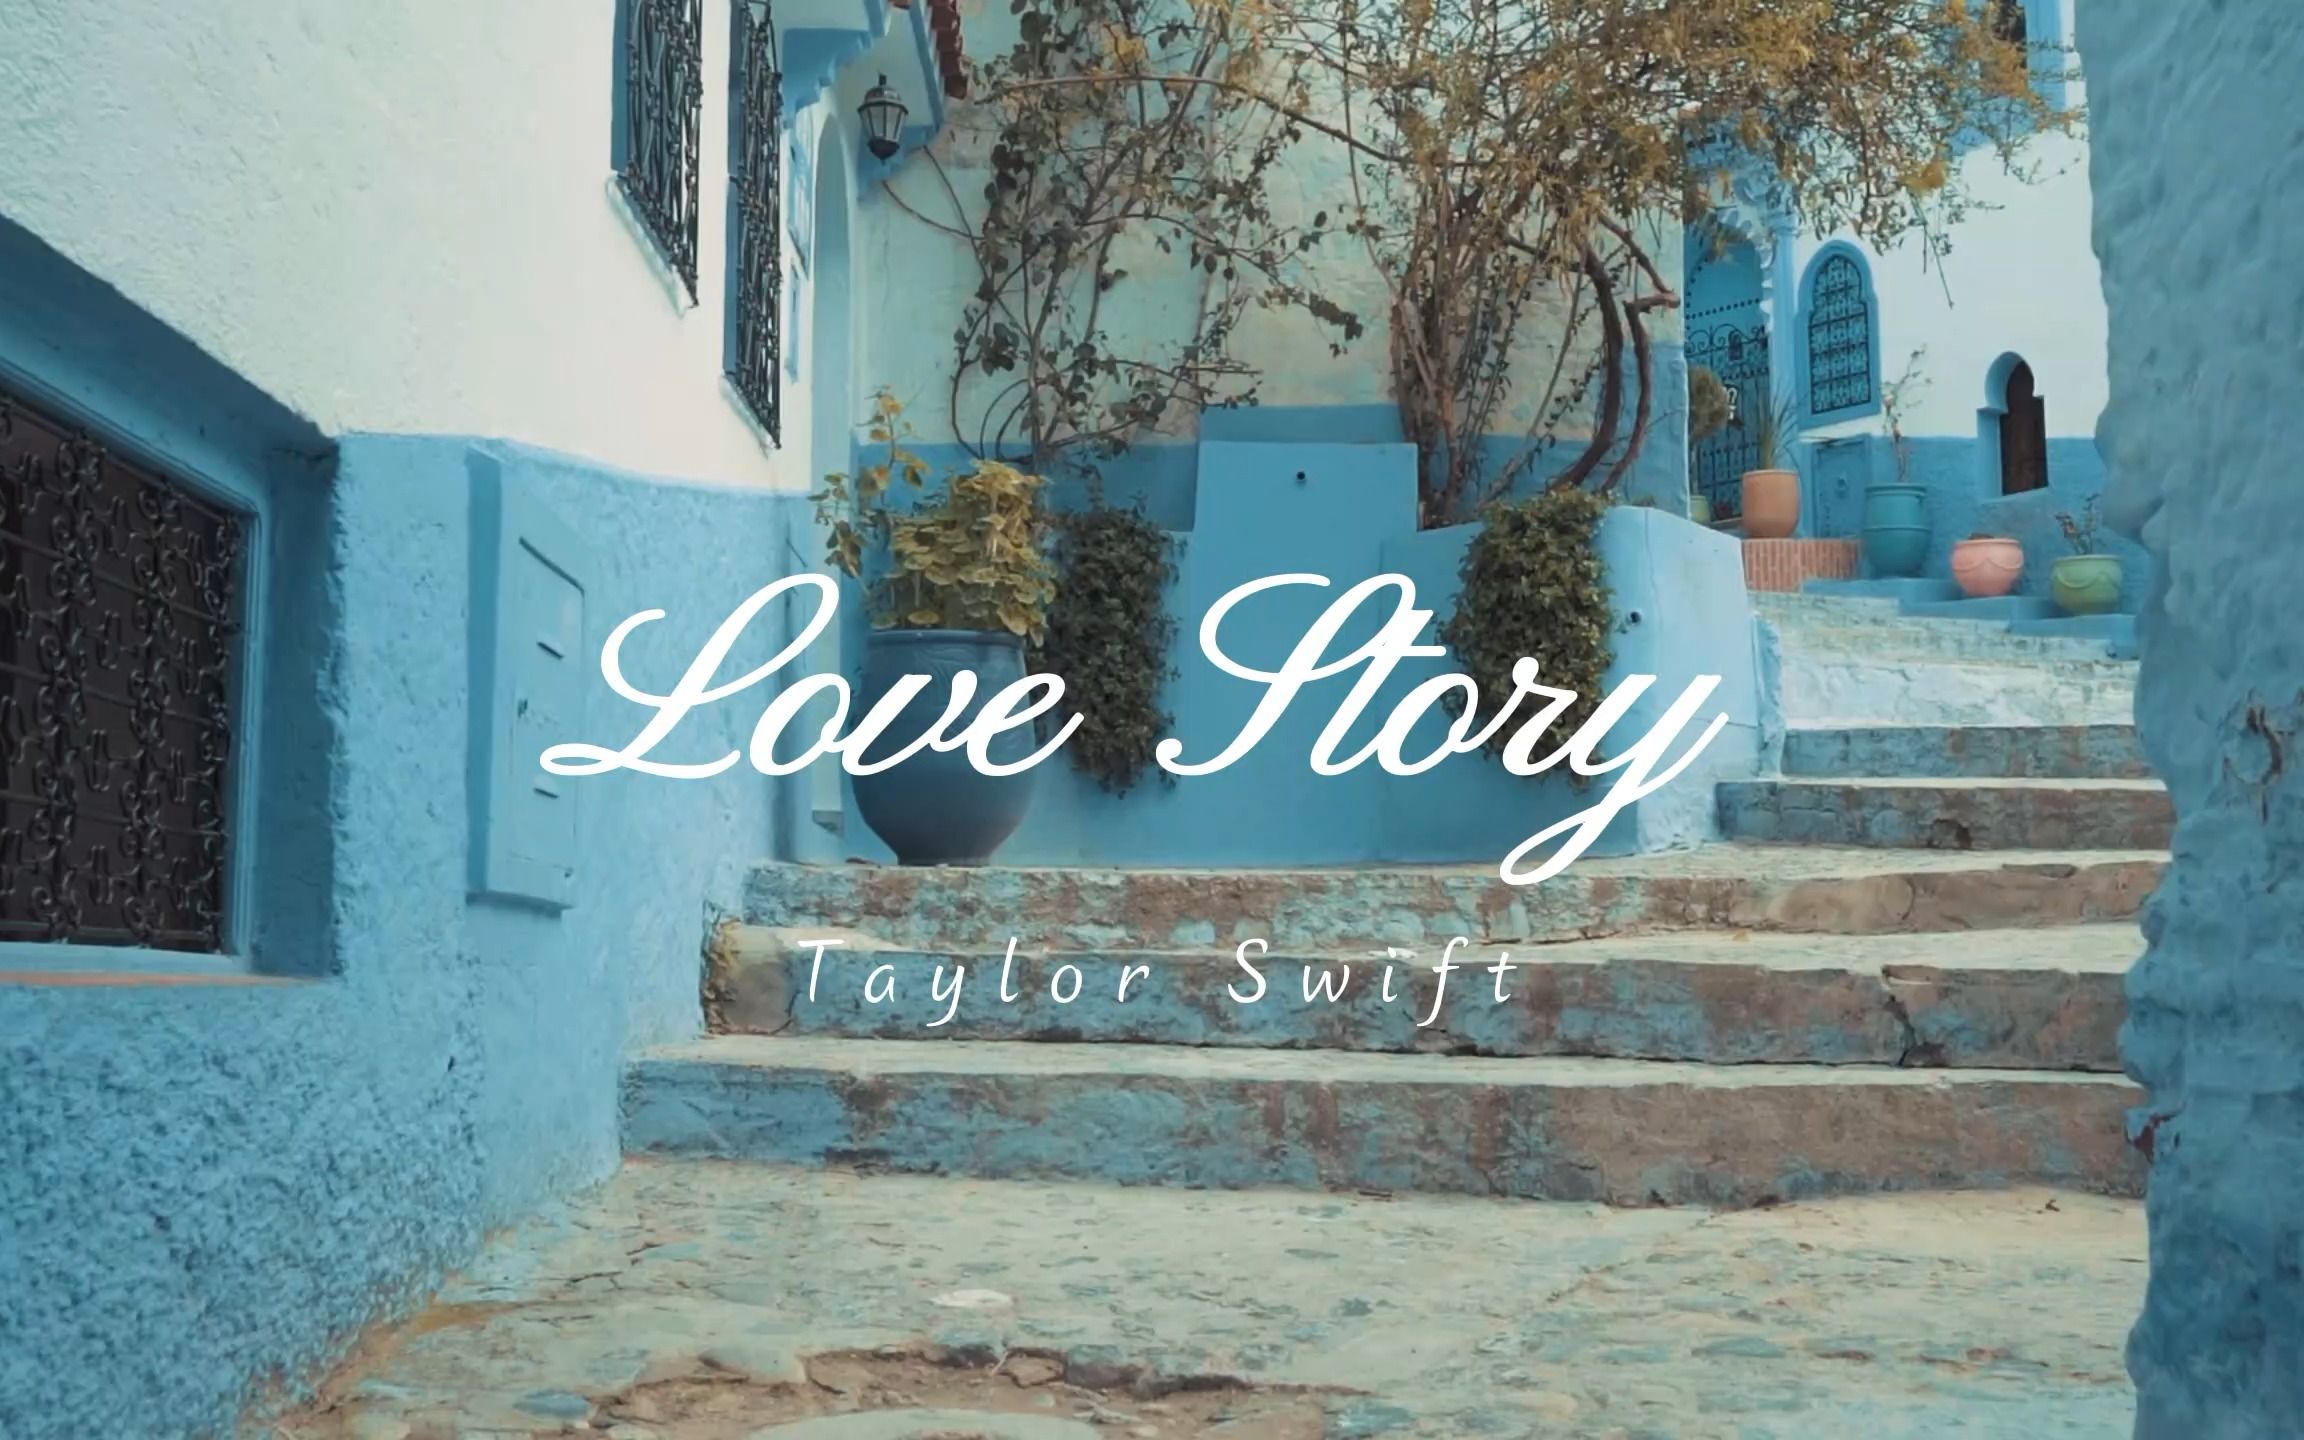 经典英文歌曲《Love Story》真正的爱情故事从来不会结束。